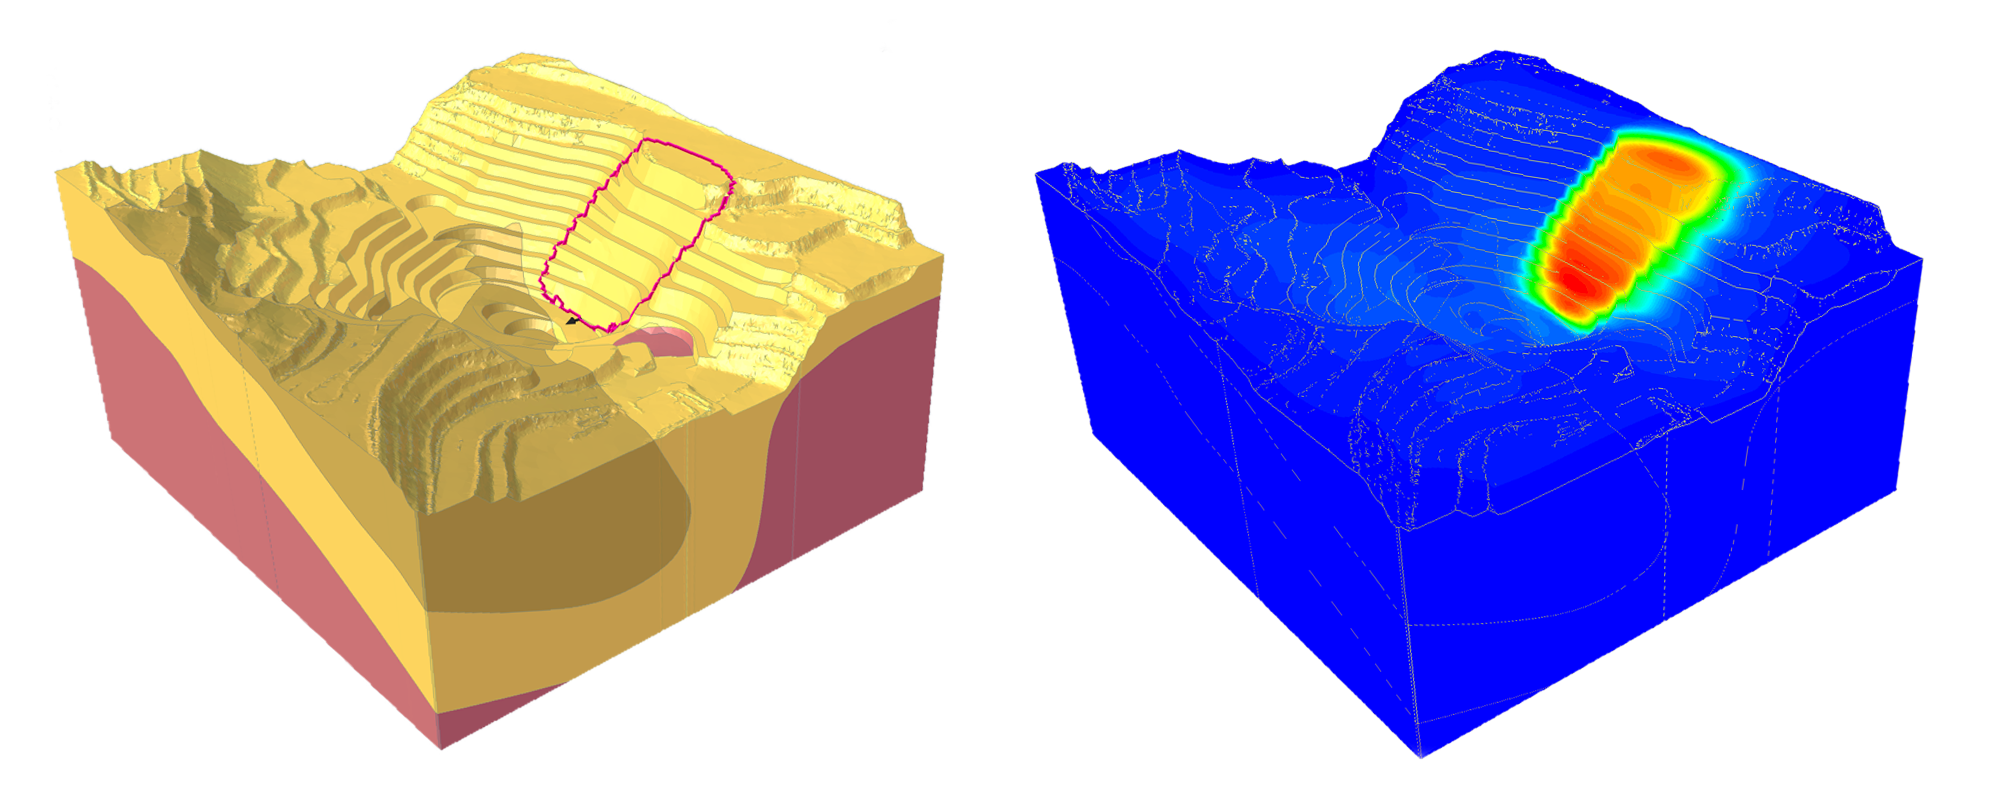 Left: Slide3 model of the open-pit mine. Right: Analysis of the open-pit mine in RS3